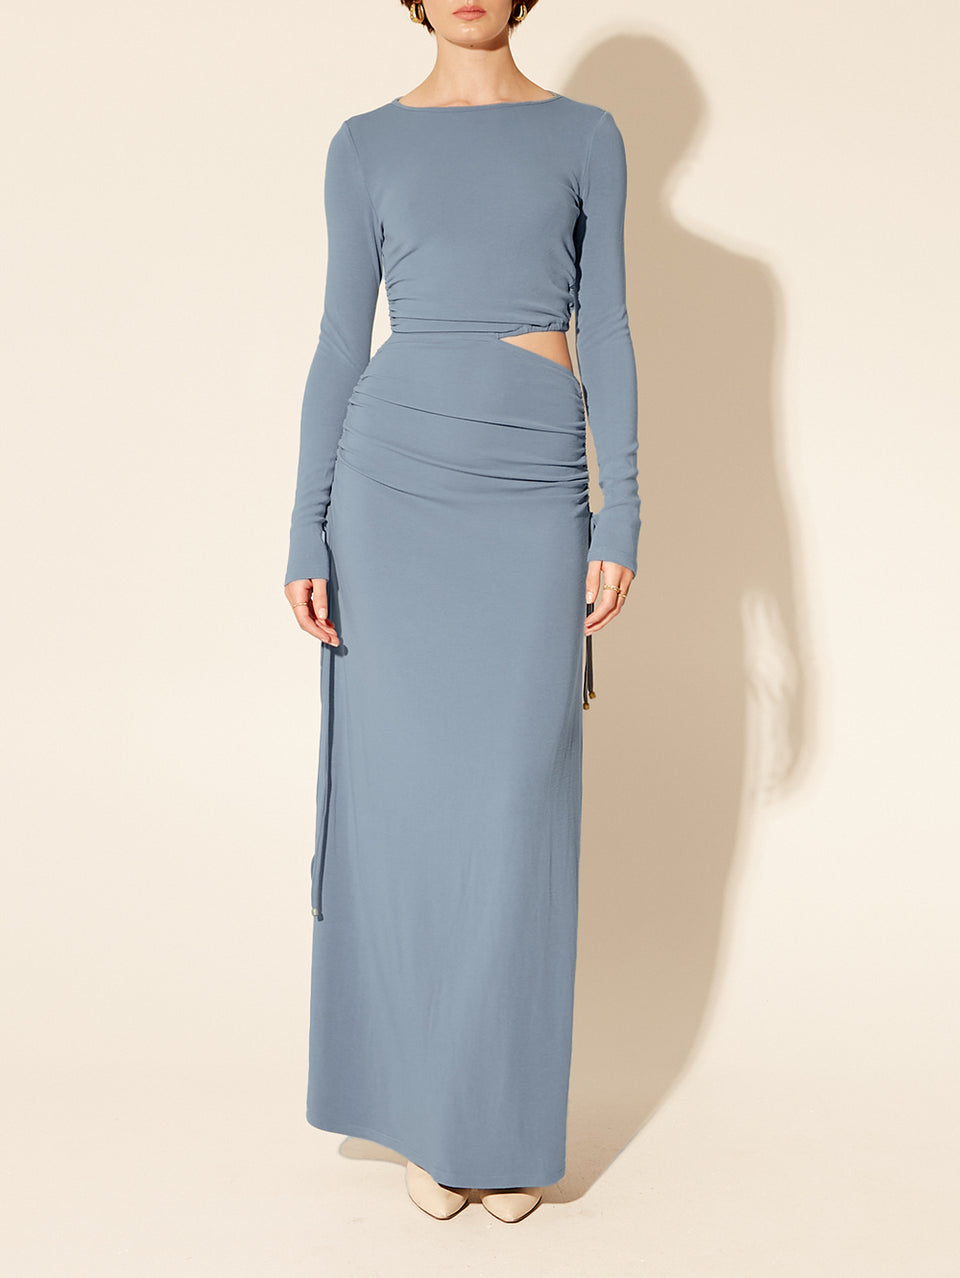 Vanessa Knit Midi Dress KIVARI | Model wears blue midi dress